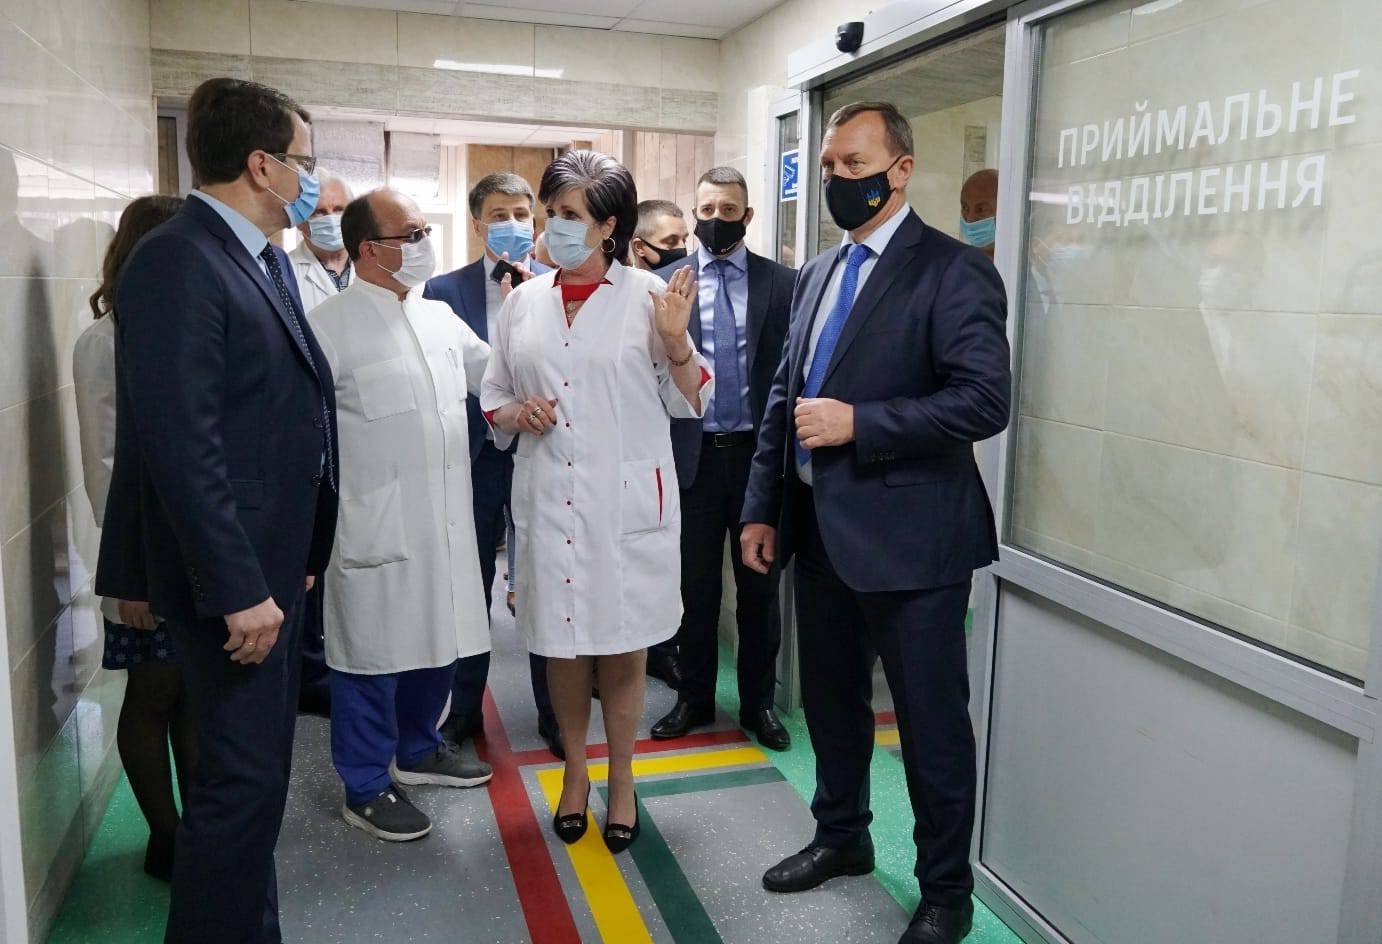 Відділення екстреної медичної допомоги відкрили сьогодні в Ужгородській міській центральній клінічній лікарні